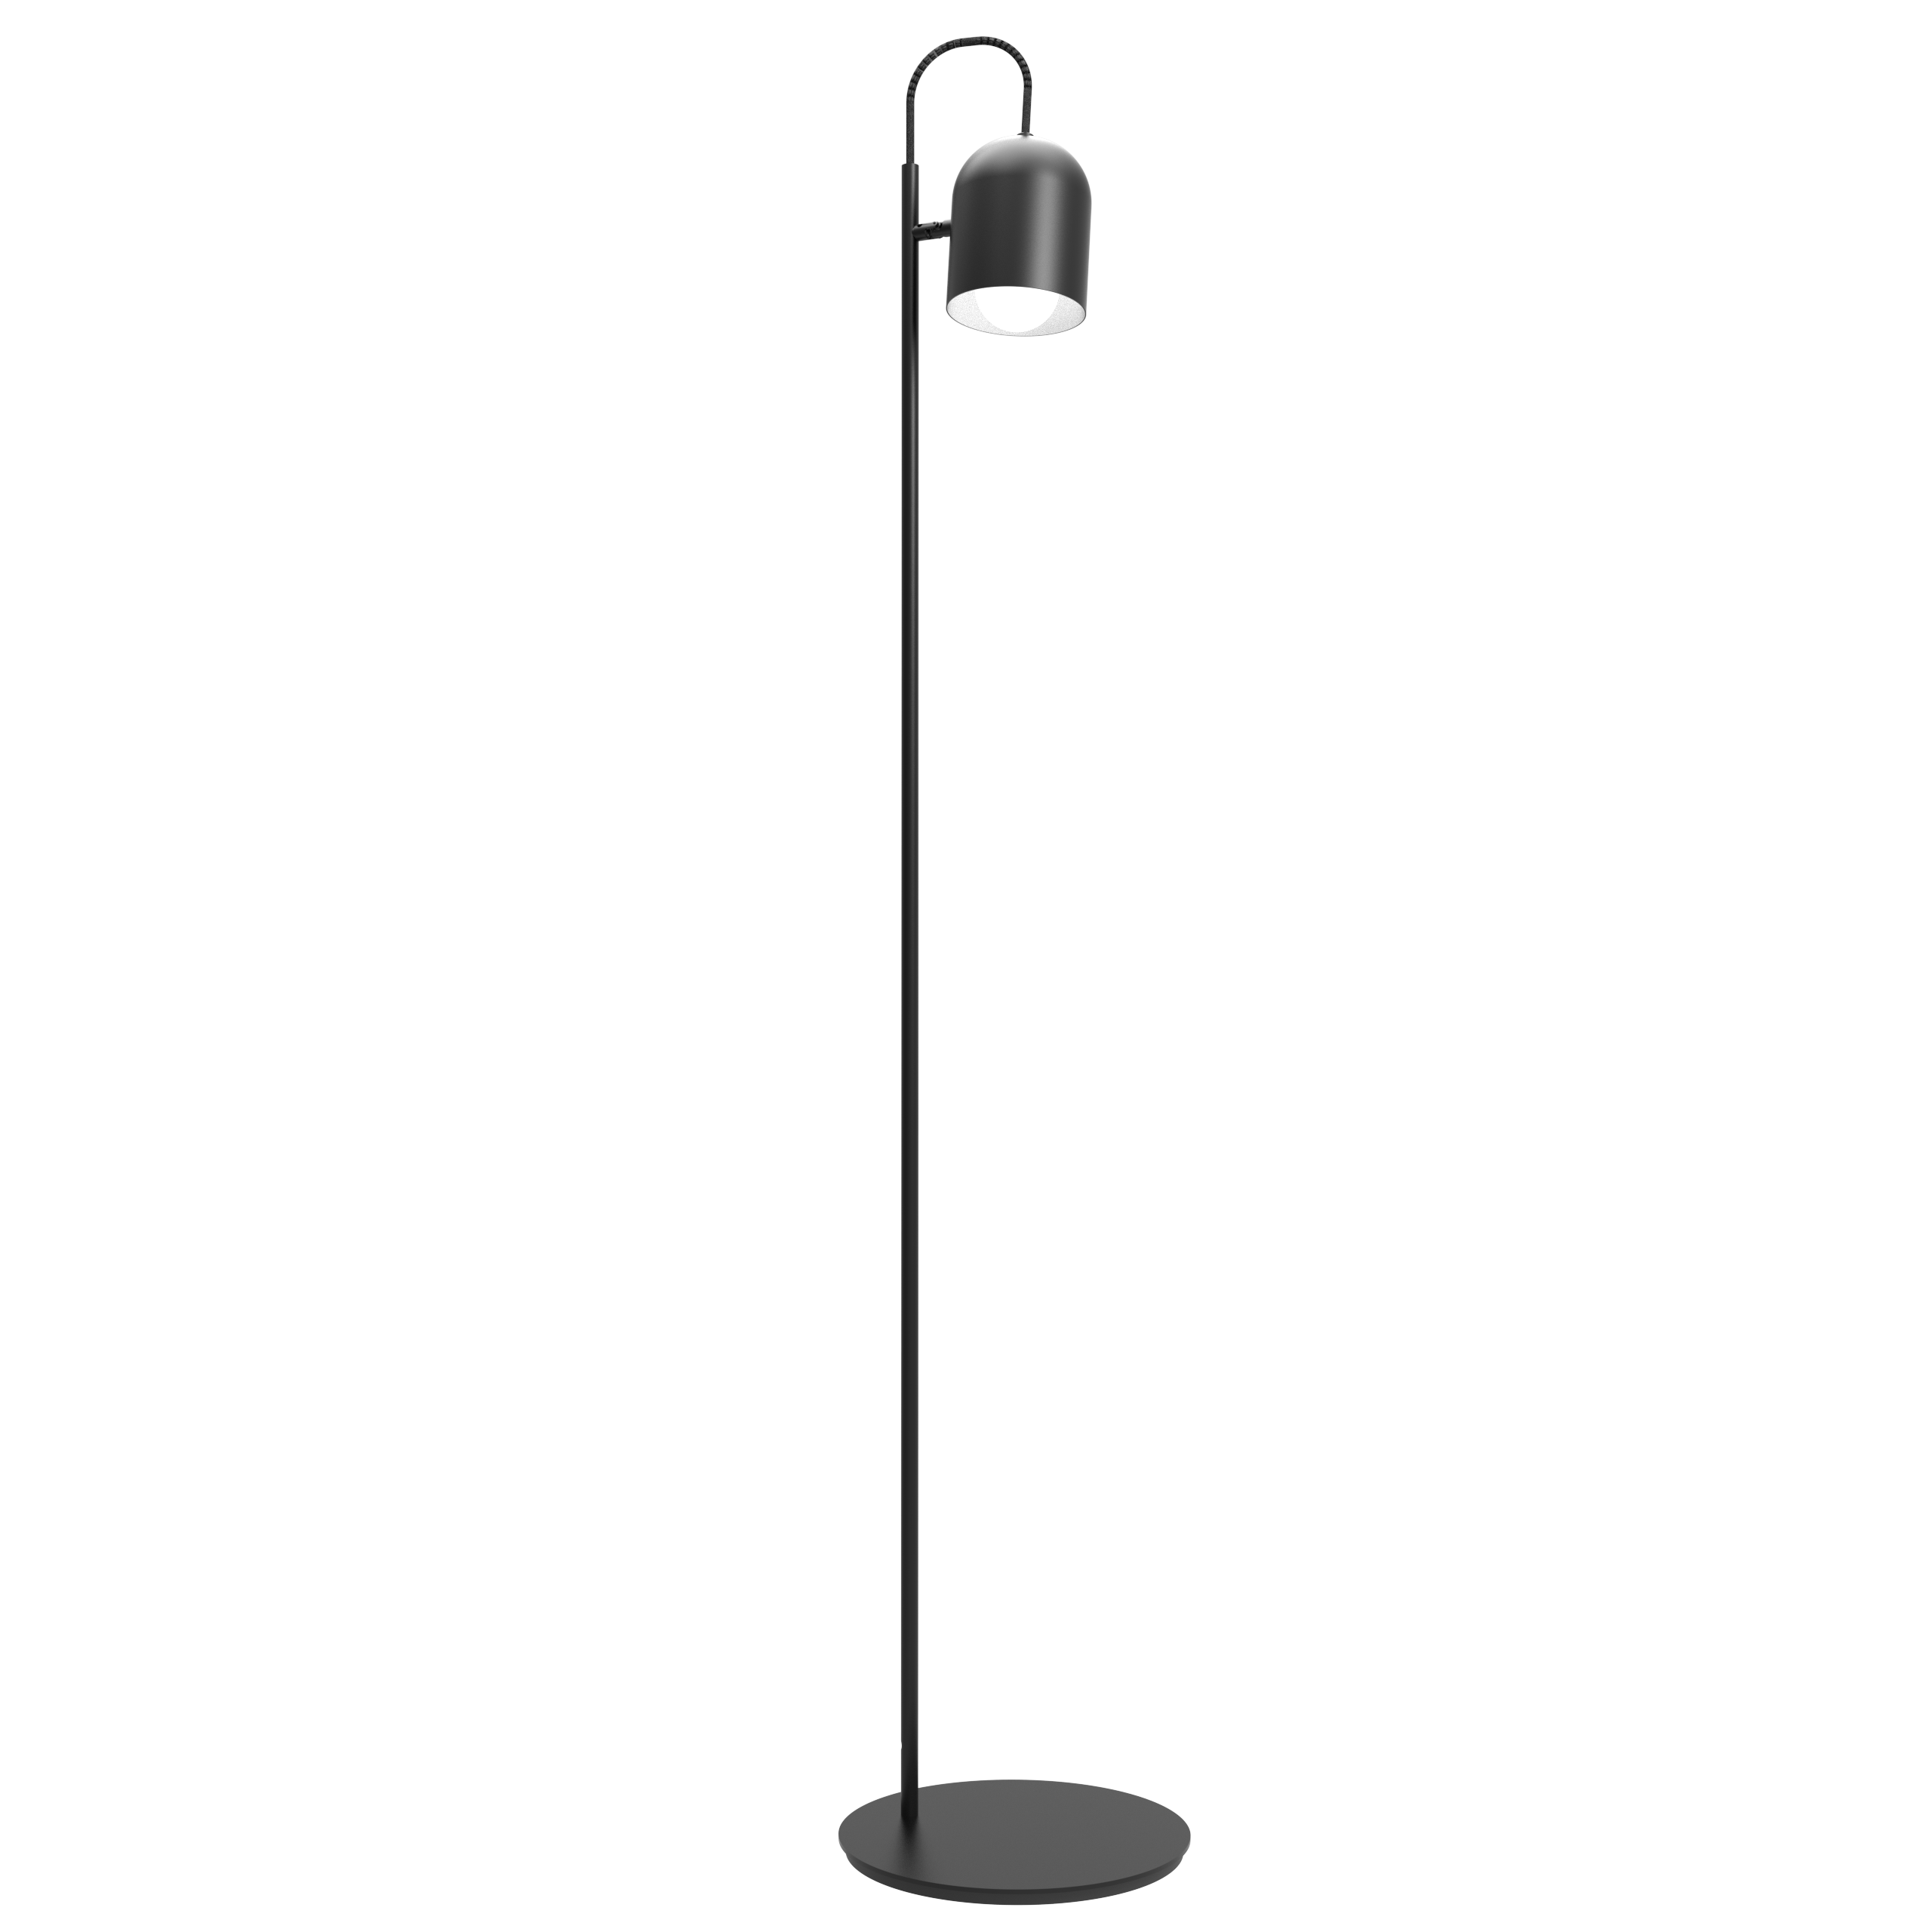 Lámpara de pie Lampy. Luminaria de estilo moderno, fabricado íntegramente en acero y disponible en color blanco, negro, bordó, azul y verde.